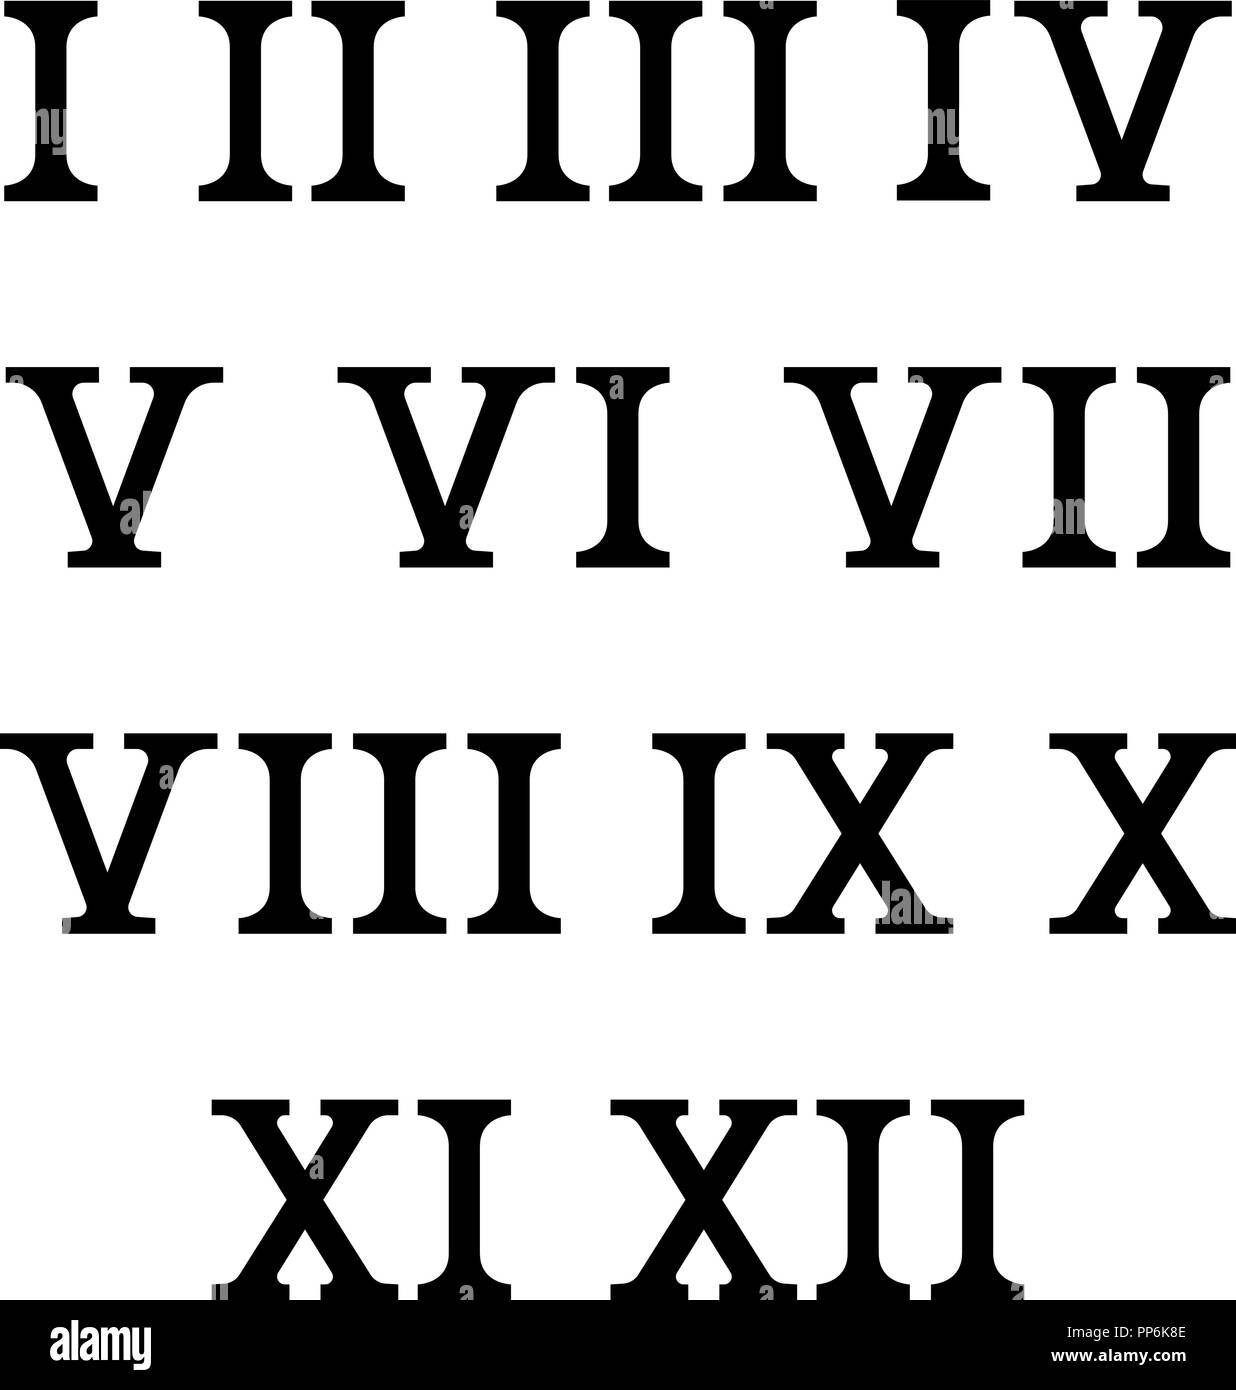 Reloj de Pared Tipo Mural 3D Números Romanos Textos en Inglés »